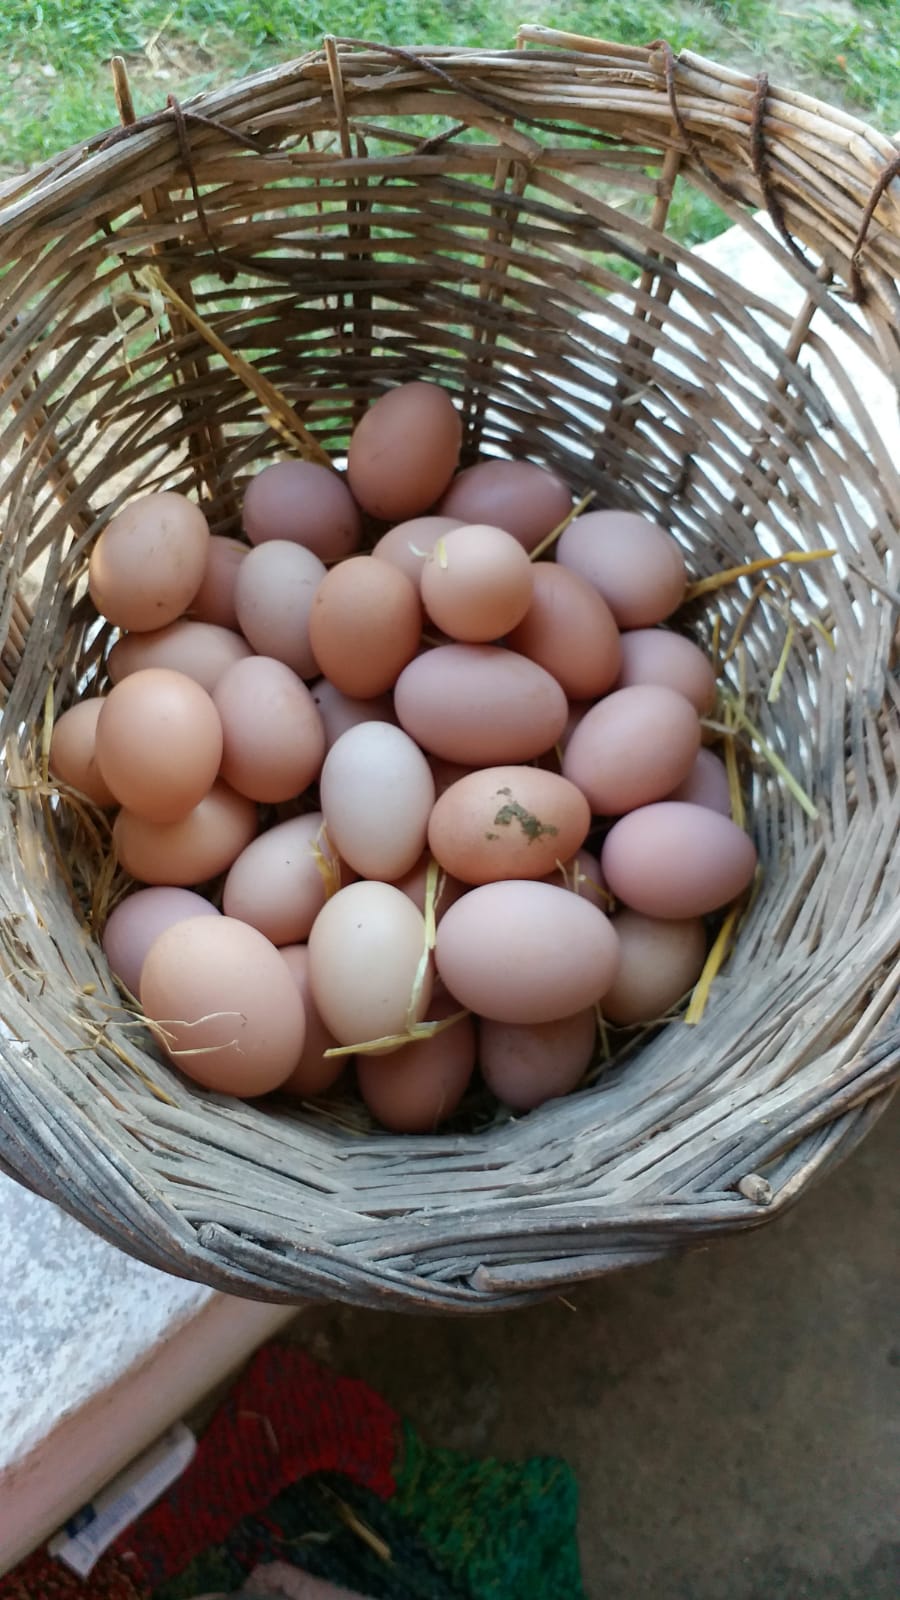 Tavuk yumurtası - Ugur Akin tarafından verilen satılık tavuk yumurtası ilanını ve diğer satılık tavuk yumurtası ilanlarını tarimziraat.com adresinde bulabilirsiniz